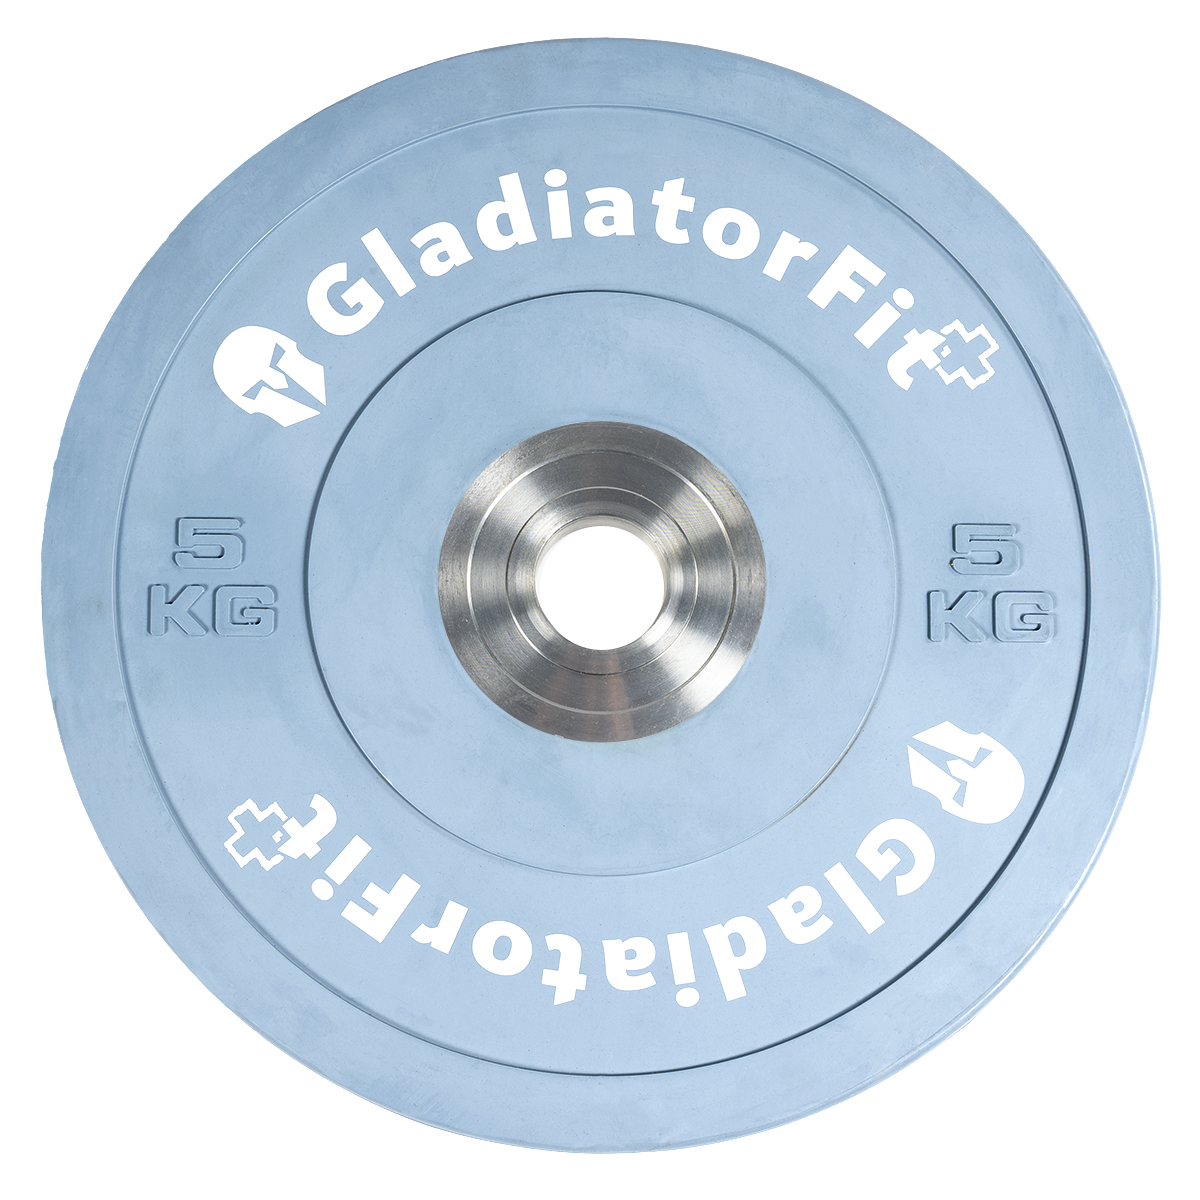 Disco De Competición Revestido De Goma De 51 Mm De Diámetro  5 Kg Gladiatorfit - azul-claro - 